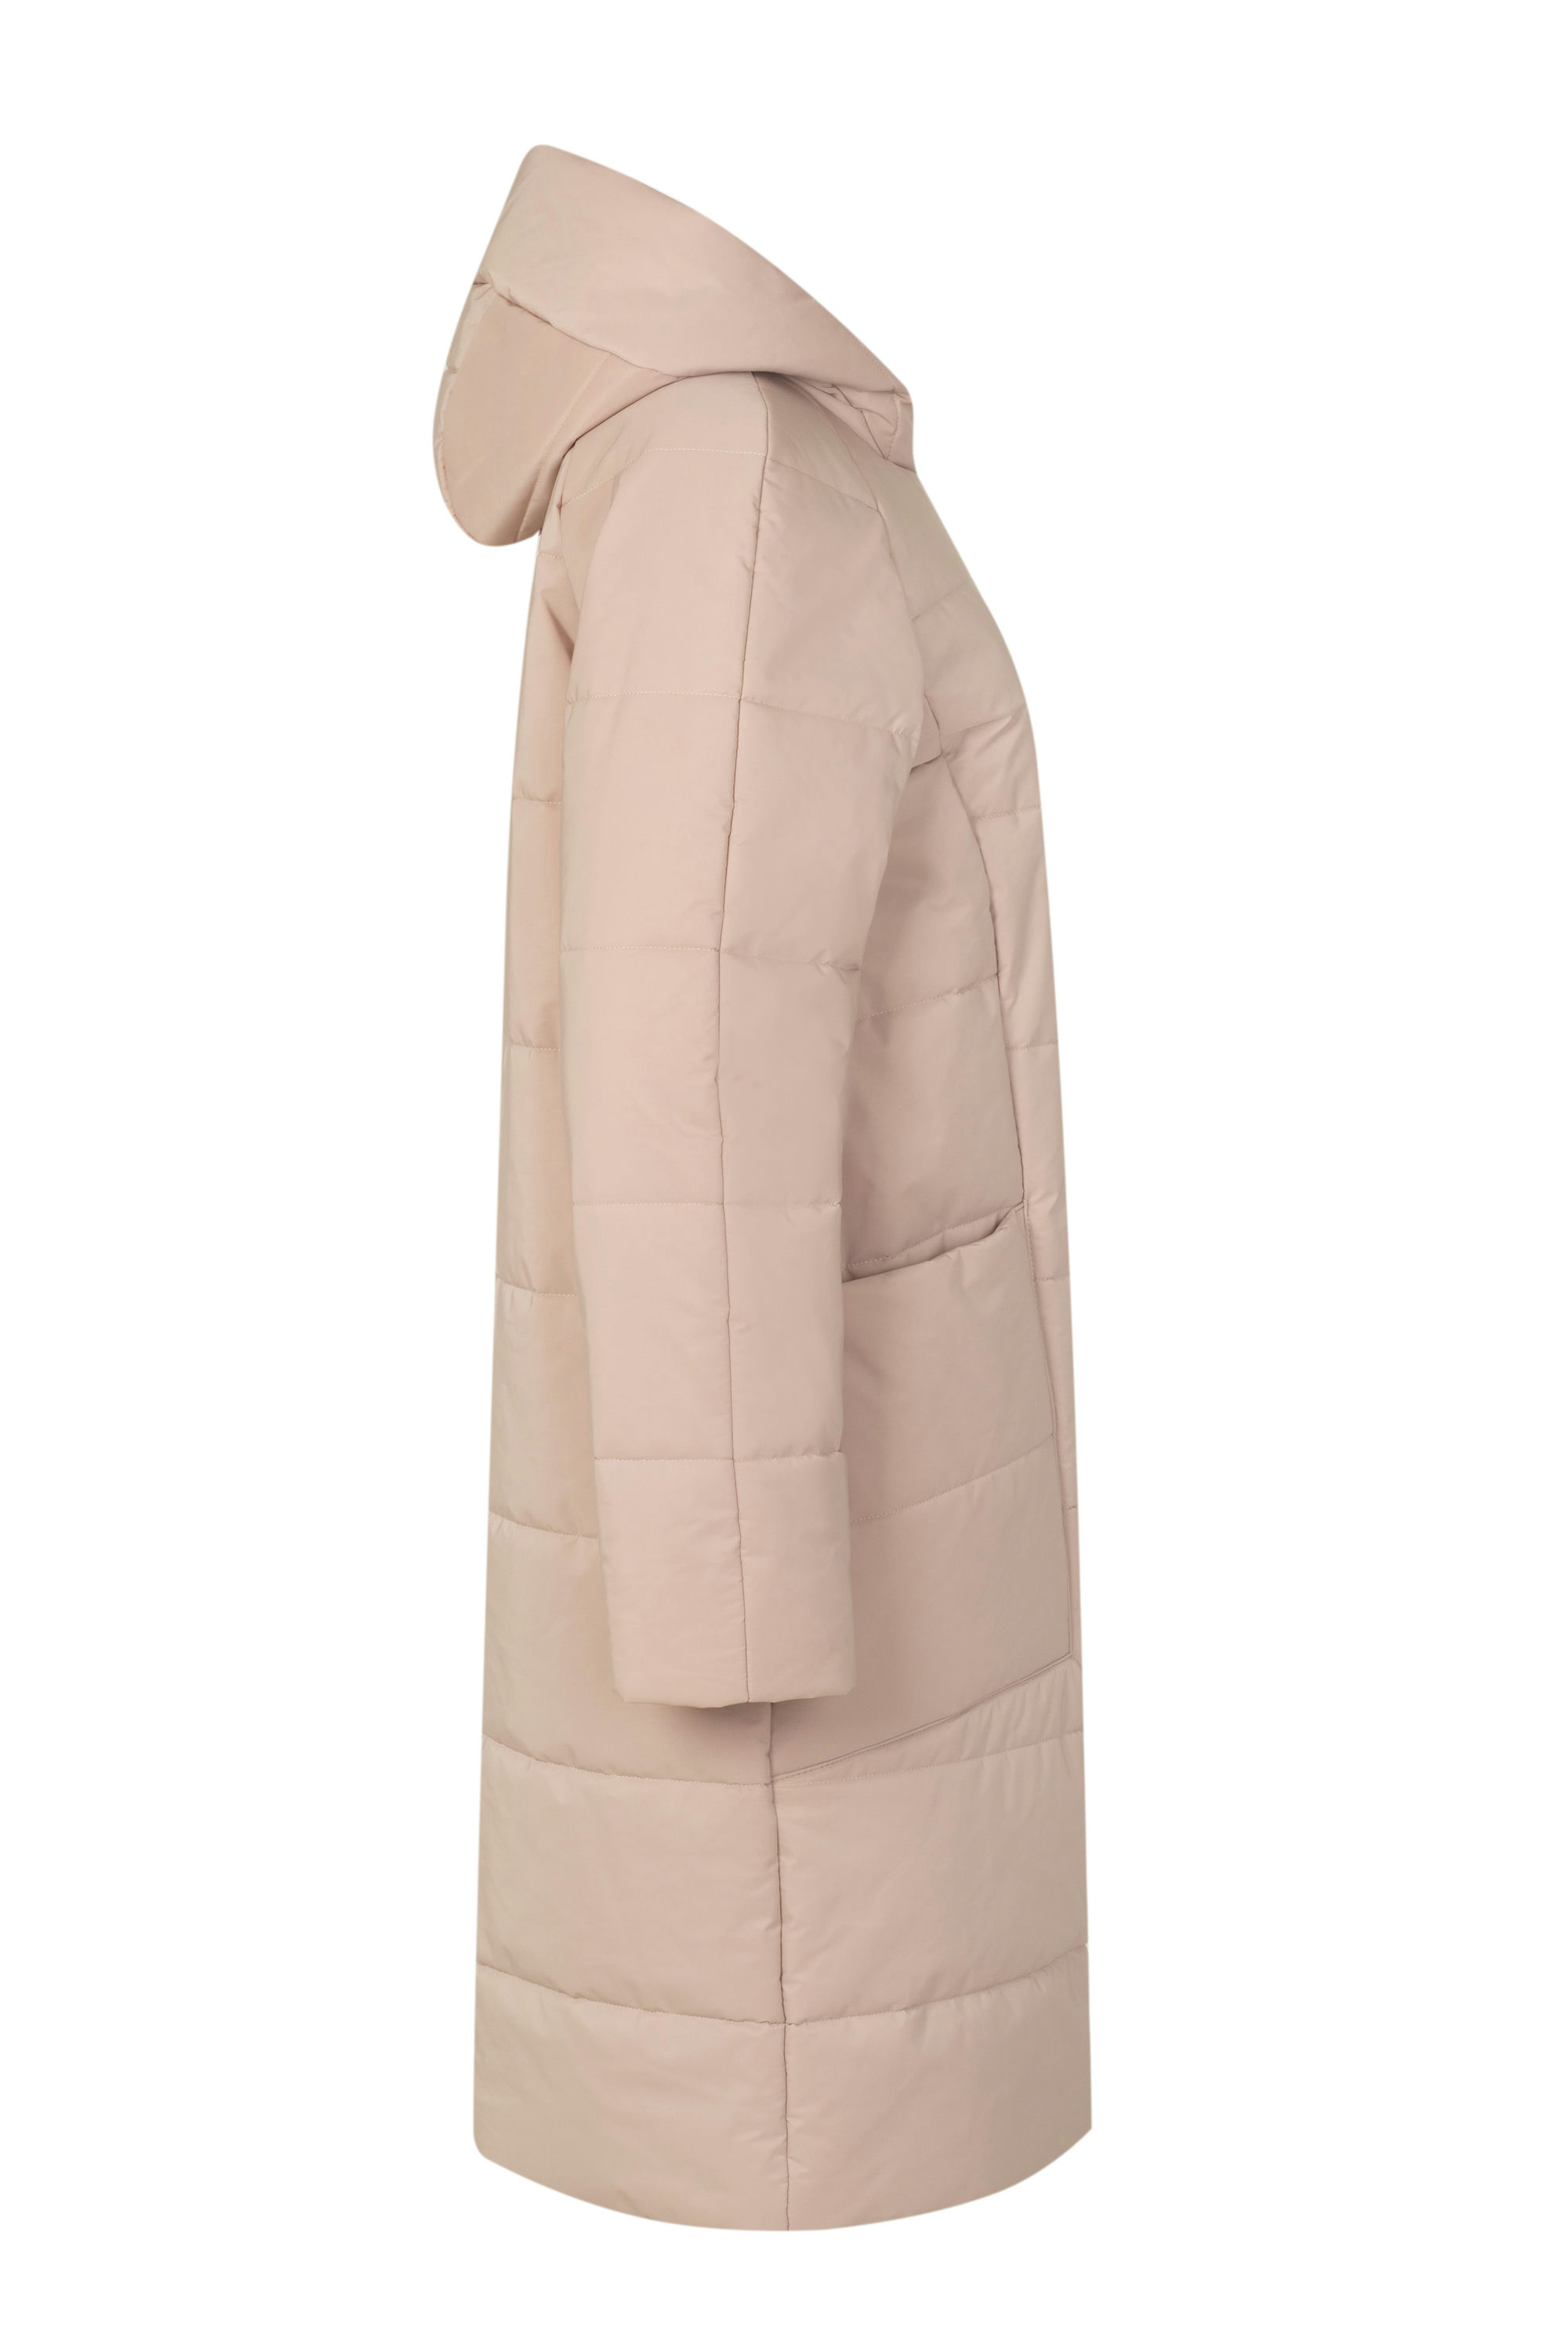 Пальто женское плащевое утепленное 5-12590-1. Фото 7.